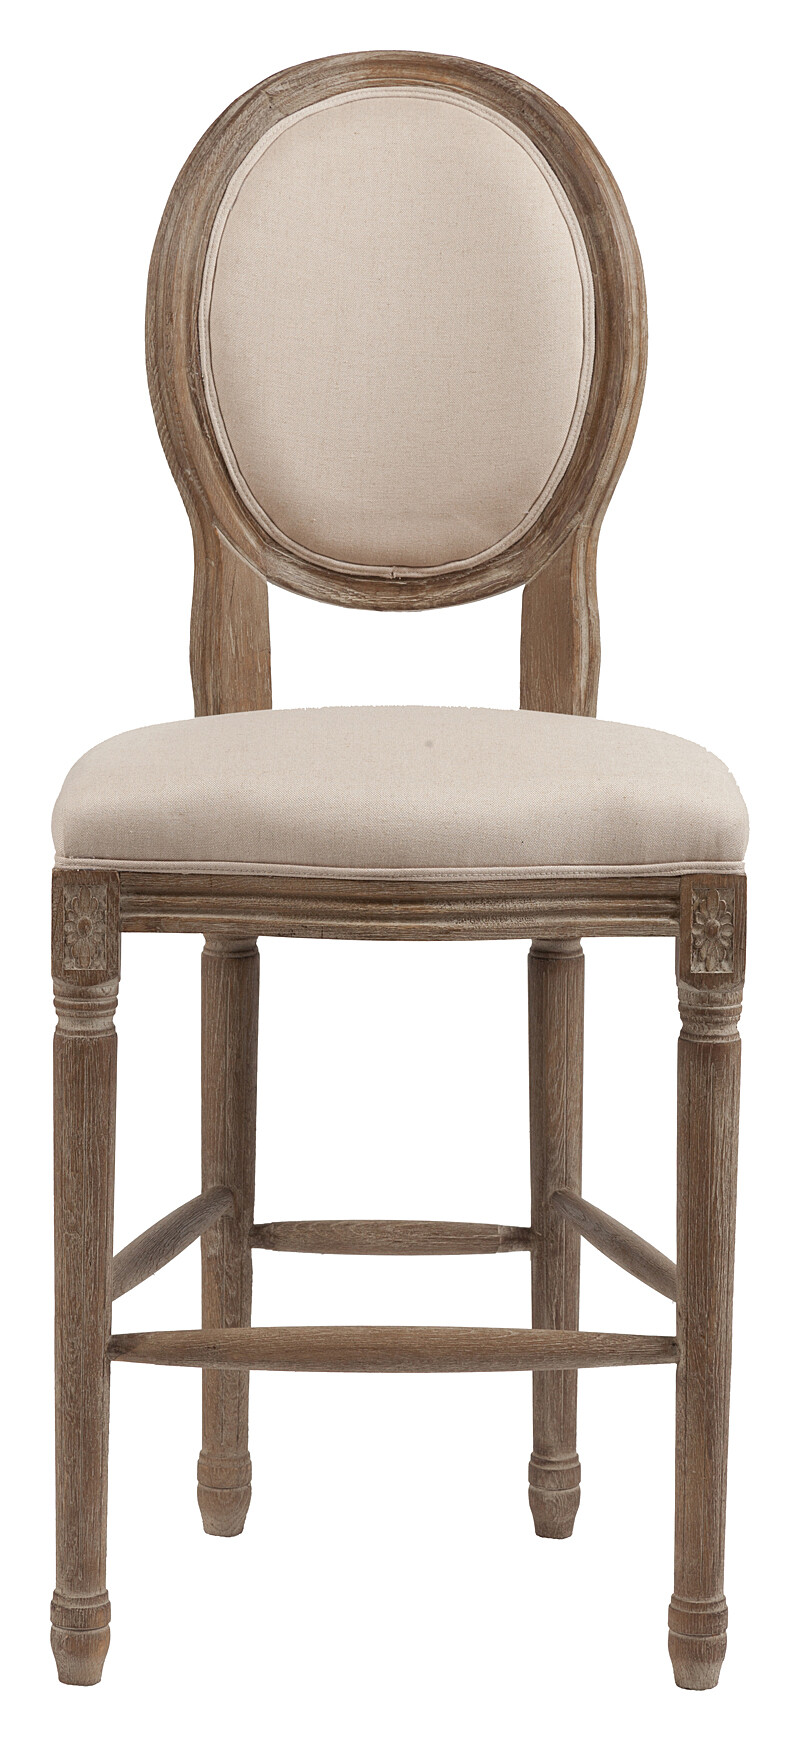 Барный стул деревянный мягкий кремовый лен Vintage French Round